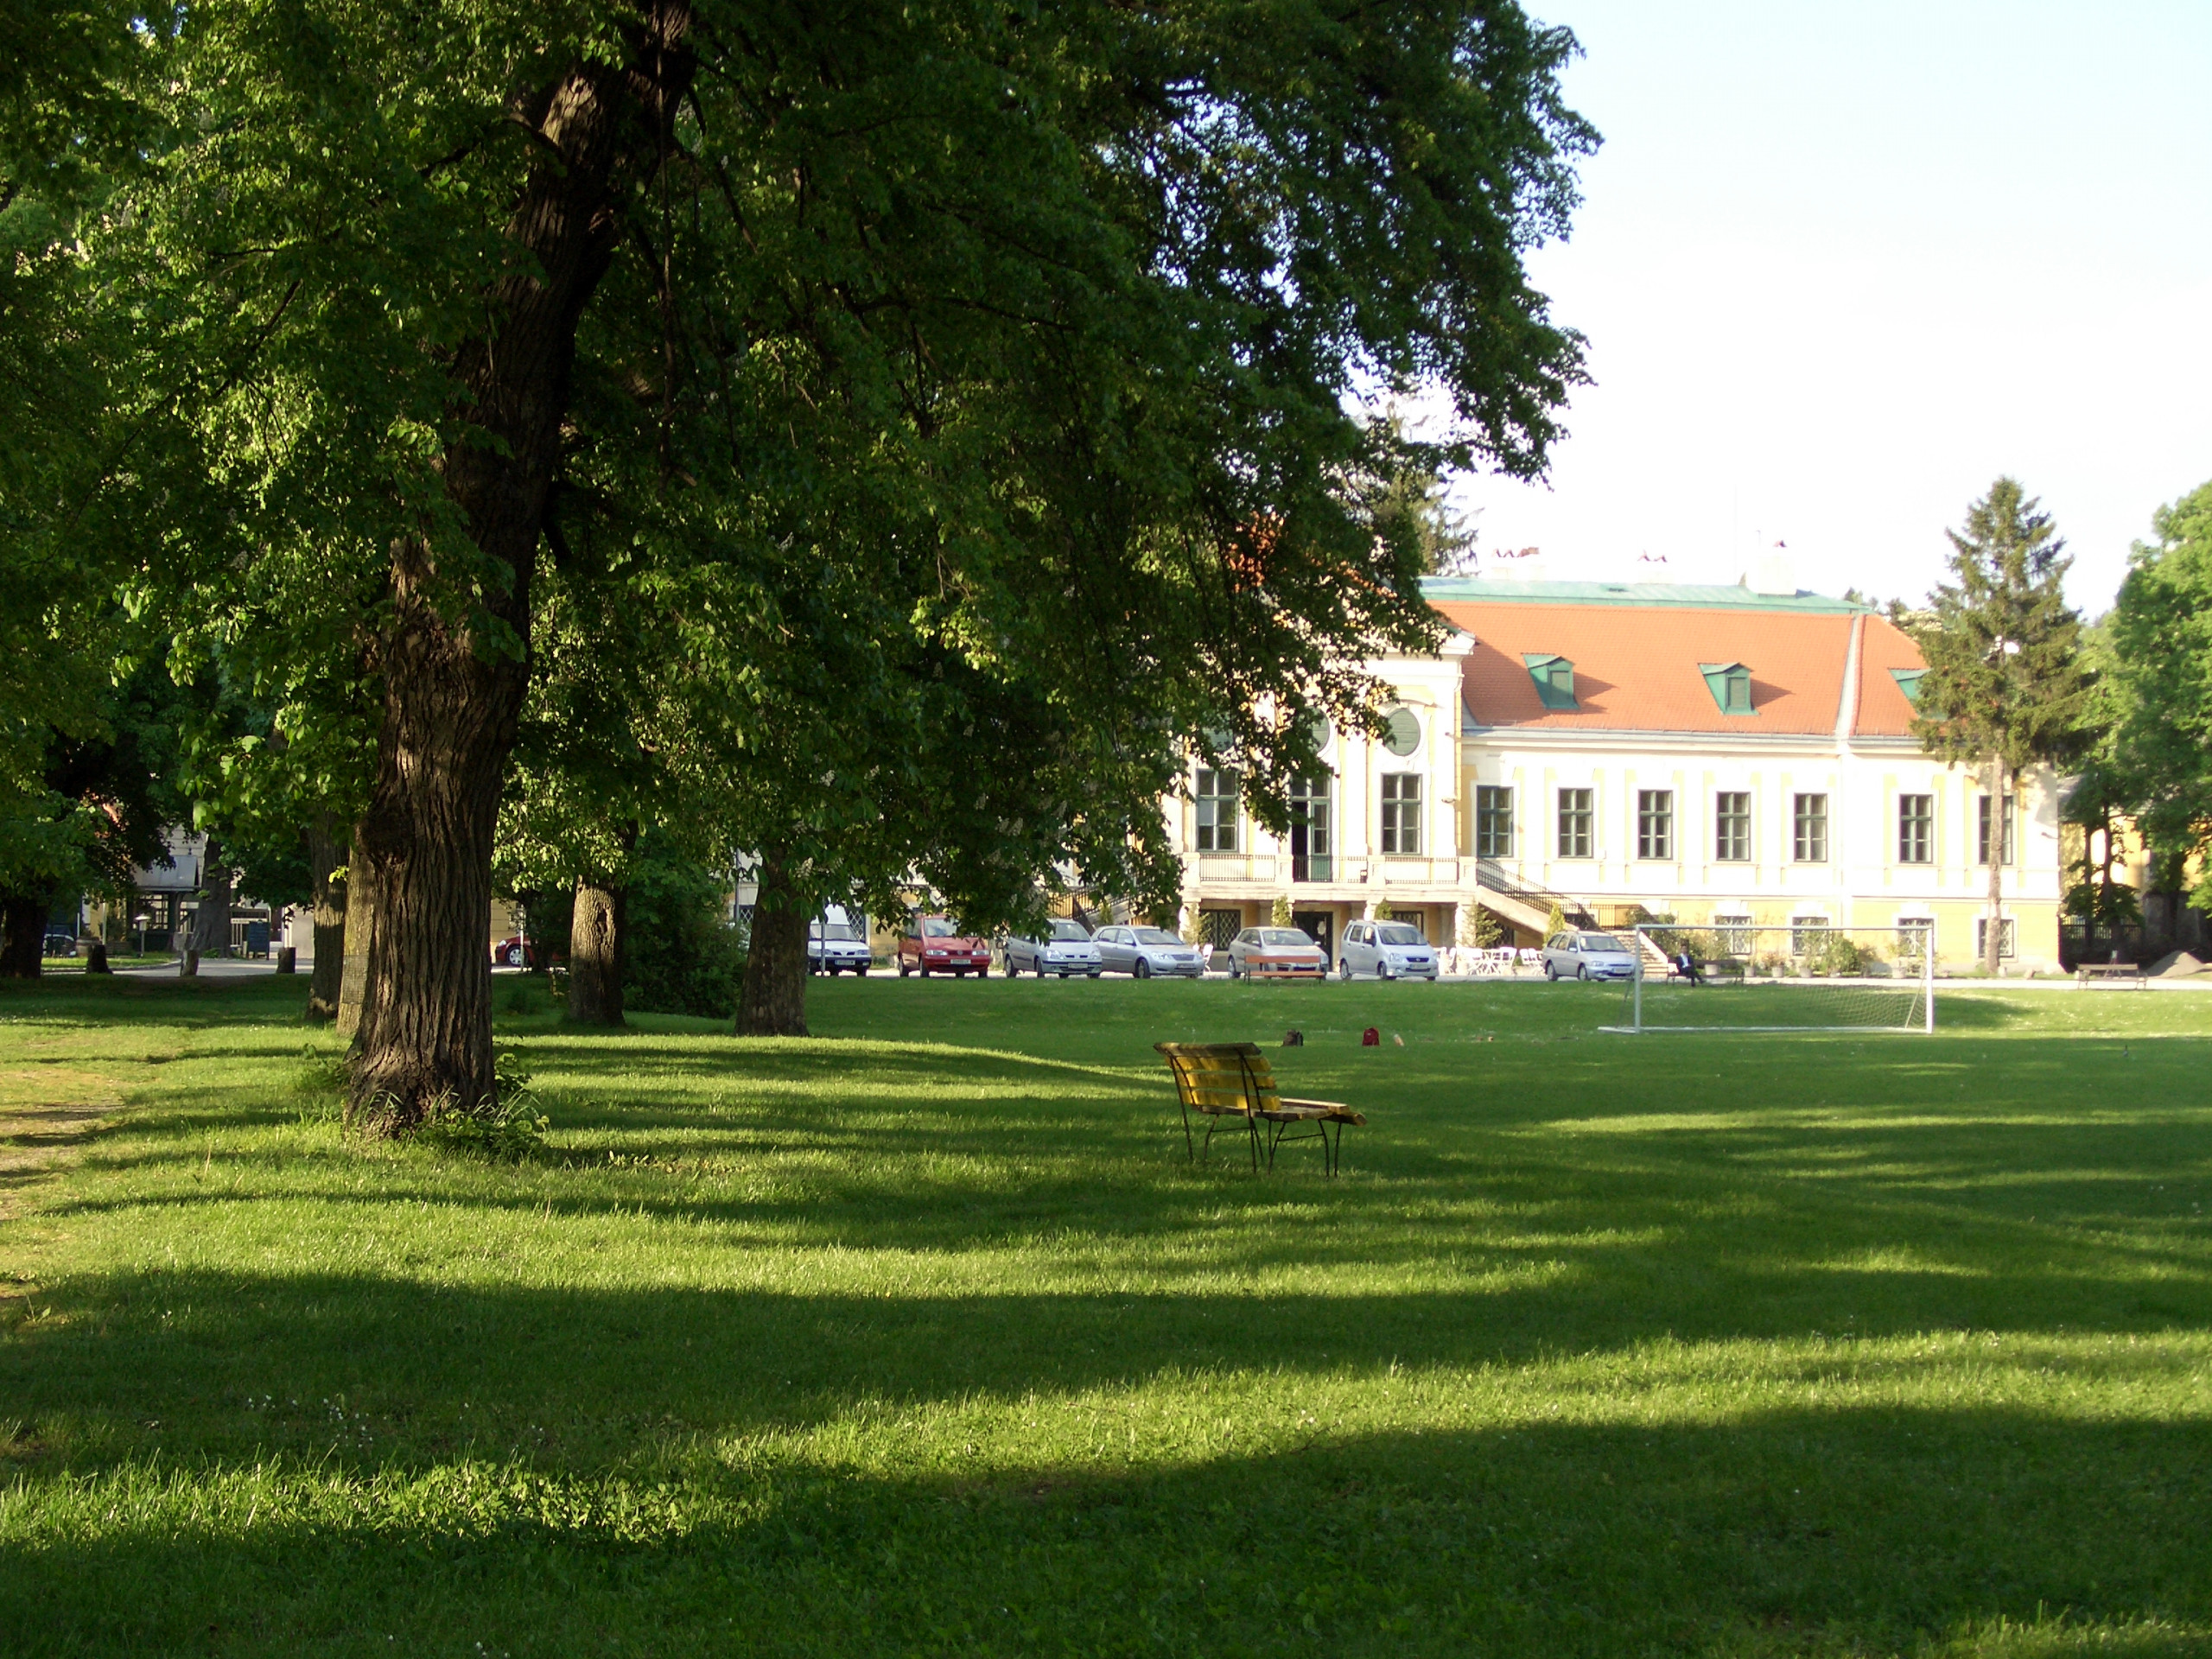 Laufen vor atemberaubender Kulisse. Blick in den Ferdinand-Wolf-Park mit Schloss Miller-Aichholz im Hintergrund.